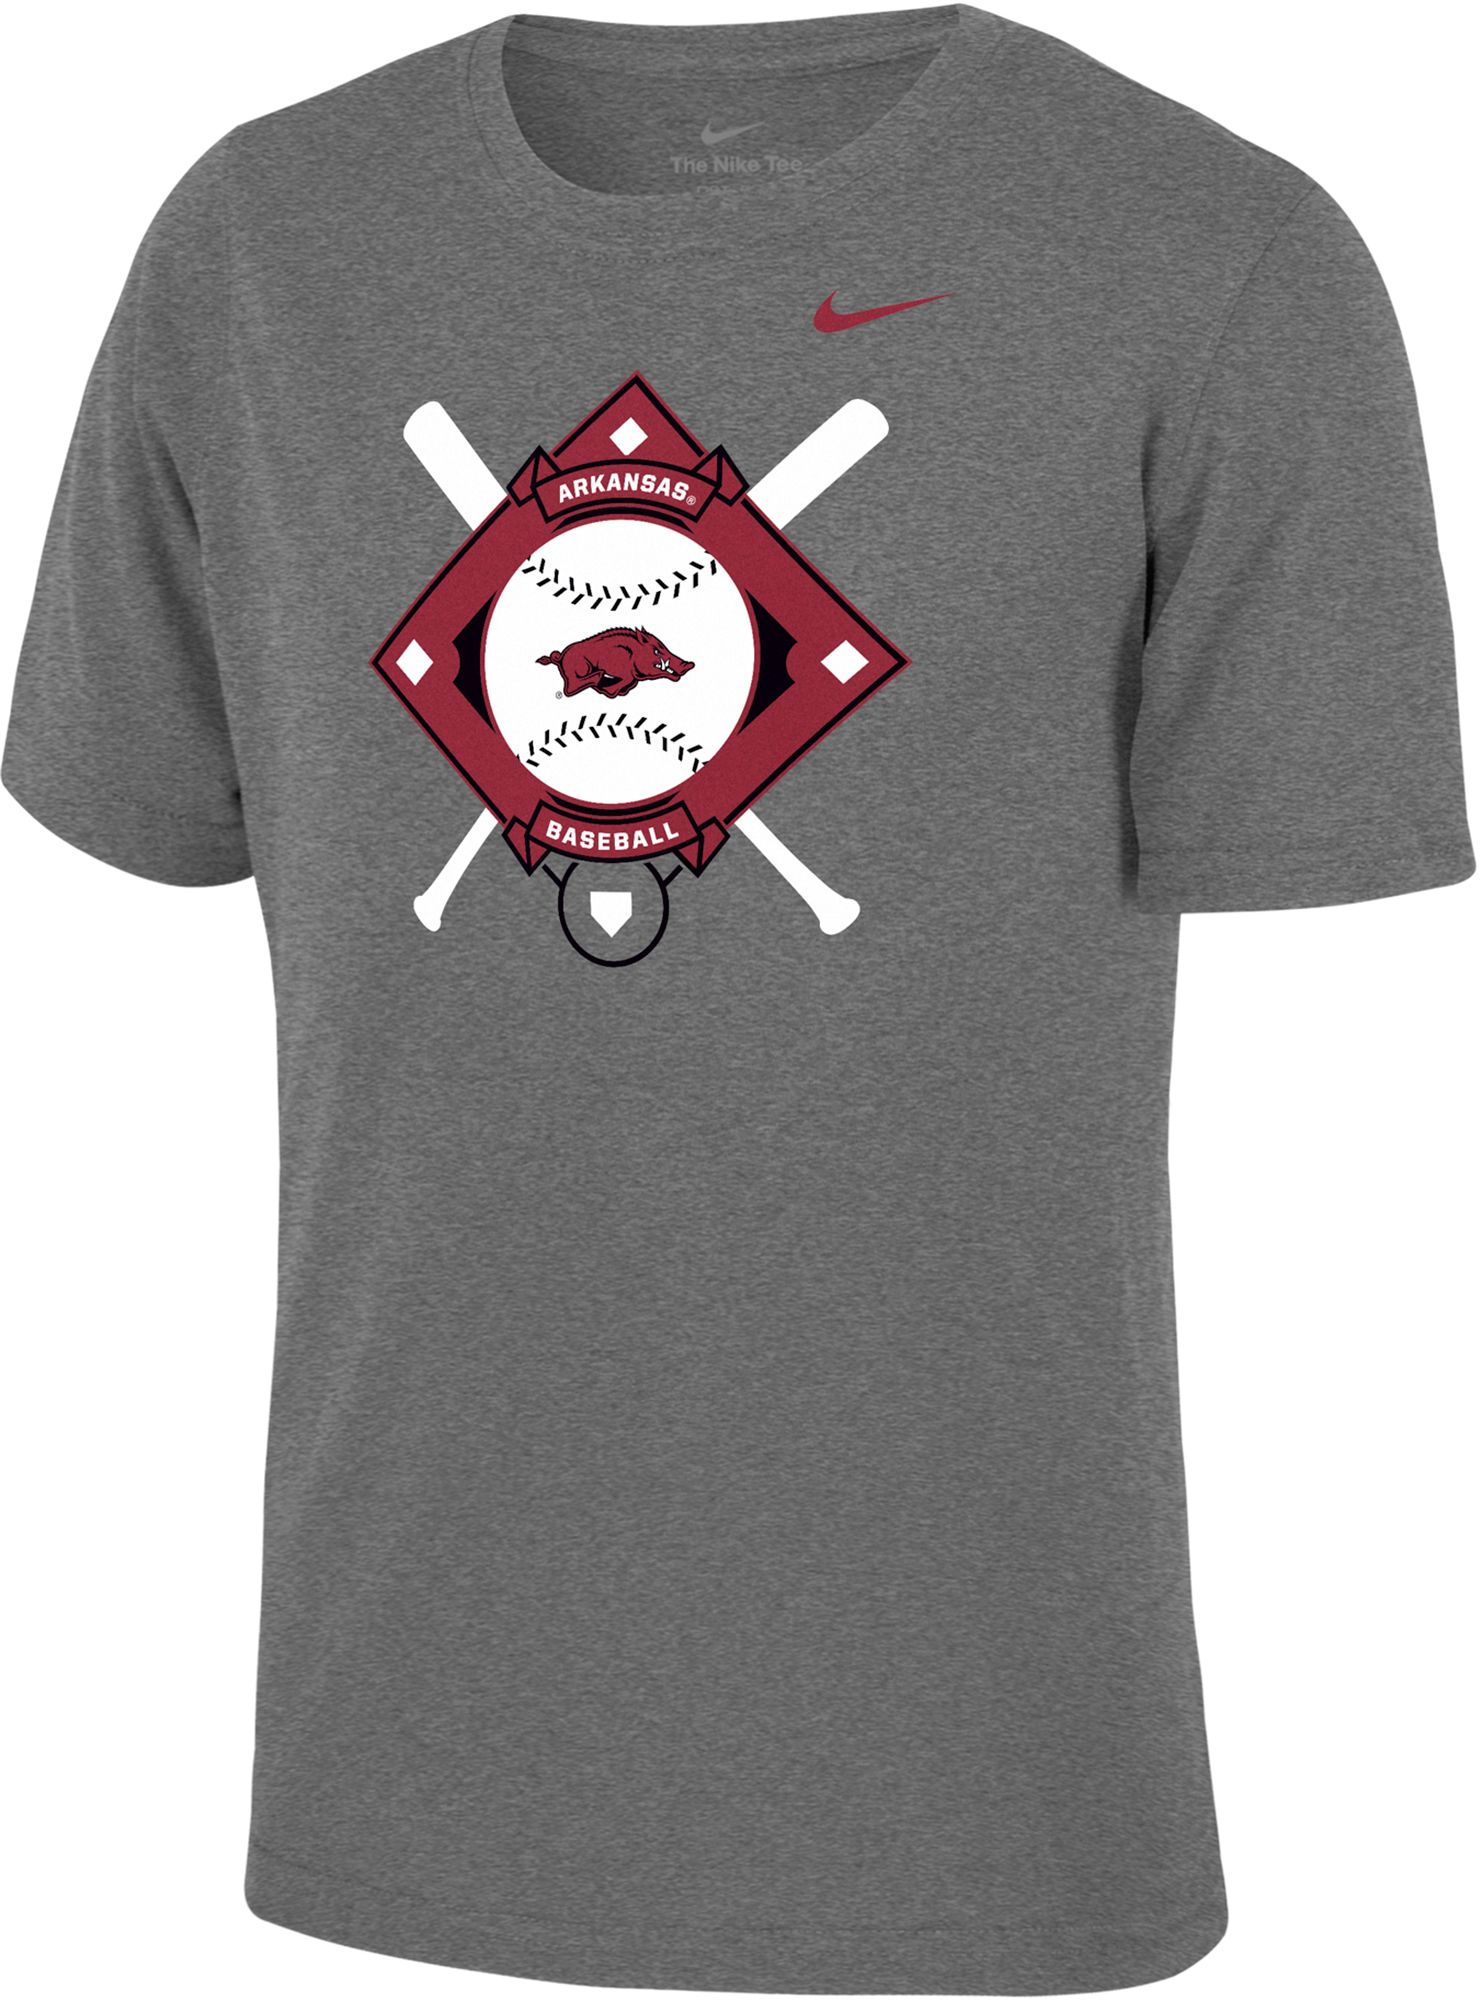 Arkansas Razorbacks youth baseball jersey